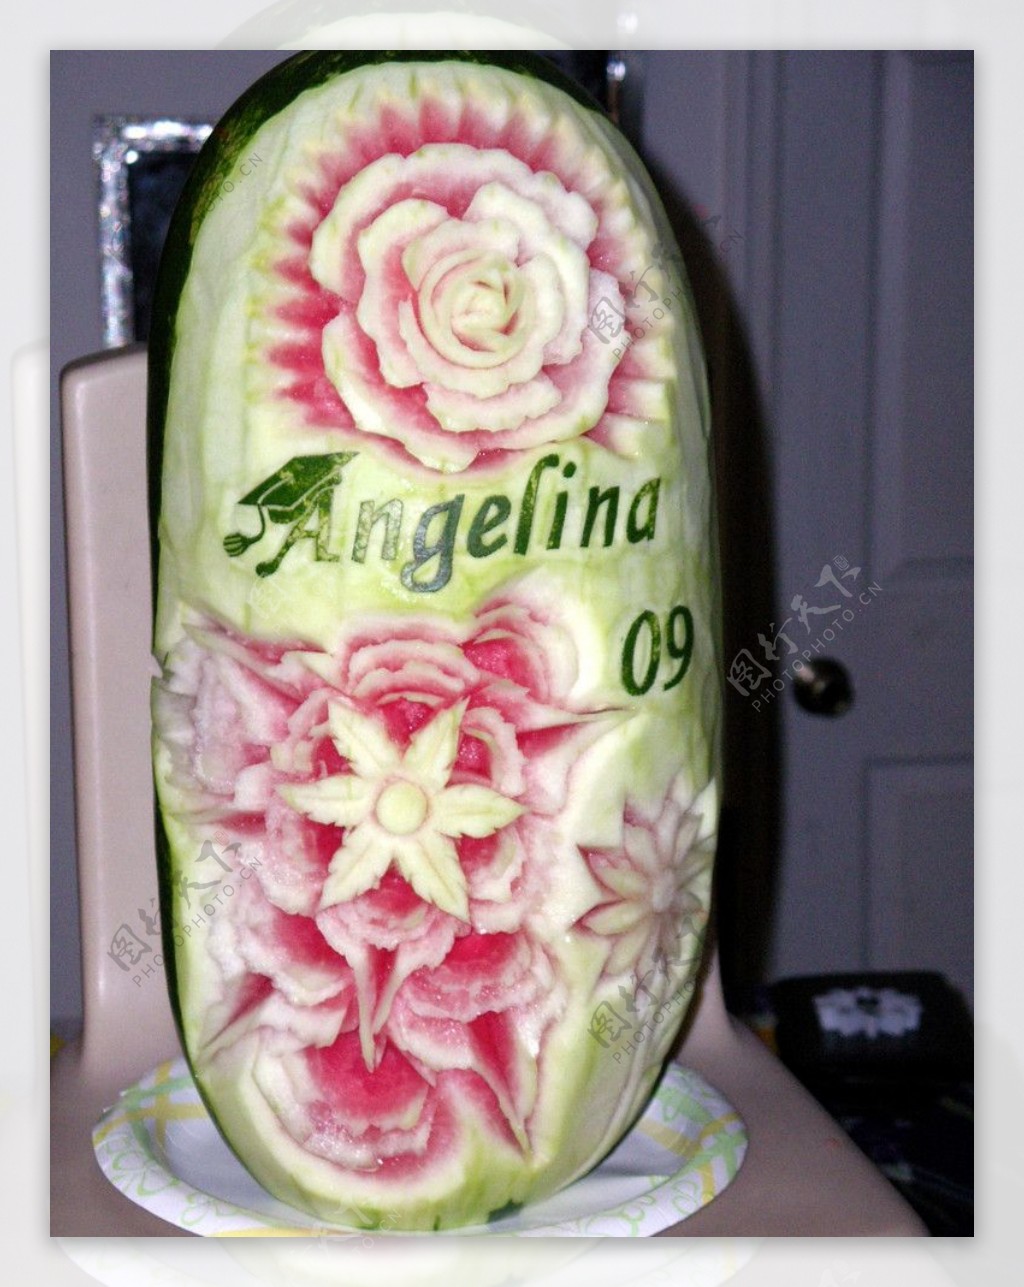 蔬果水果雕刻示范艺术食材工艺精湛陈列展品展示花西瓜图片